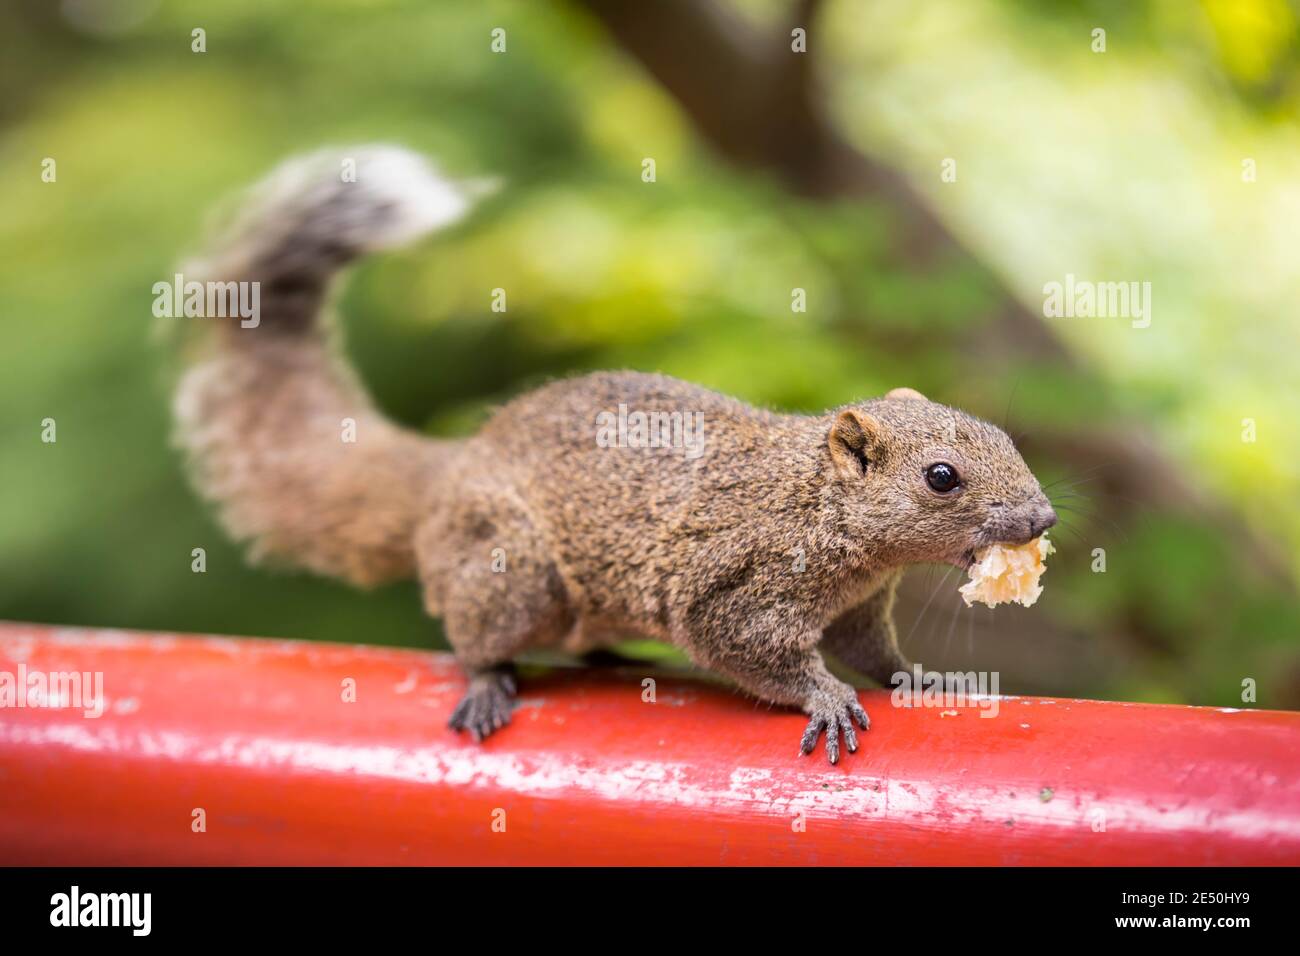 Nahaufnahme eines grauen Eichhörnchens, das einen Bissen Brot in seinem Mund hält und auf einem roten Holzpfahl vor einem leuchtend grünen Bokeh-Hintergrund steht Stockfoto